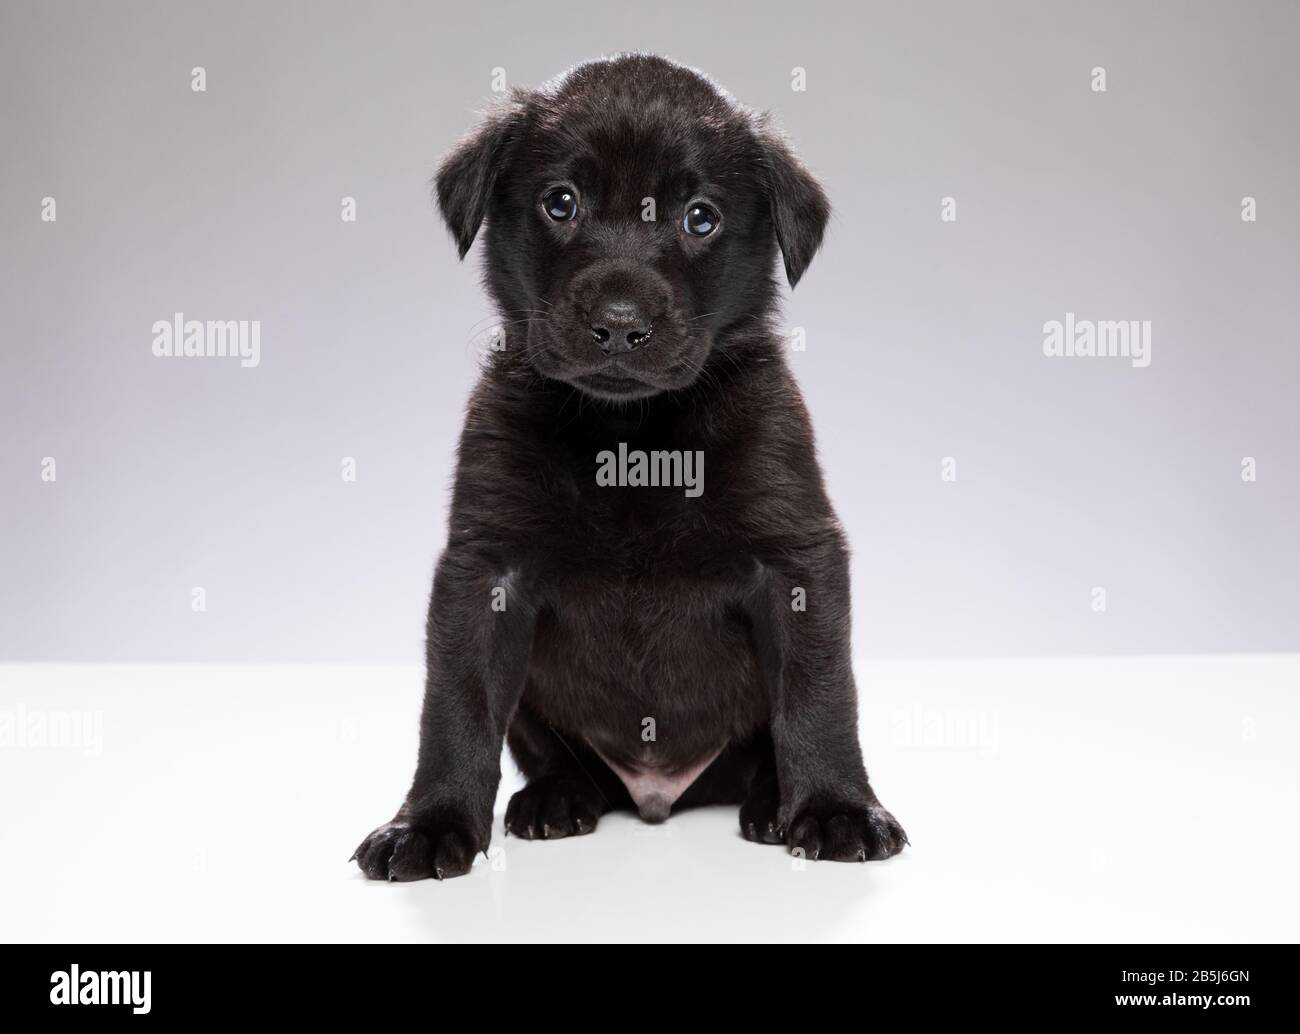 Photo pleine longueur du jeune chiot Labrador noir assis et regardant directement sur l'appareil photo avec fond gris clair Banque D'Images